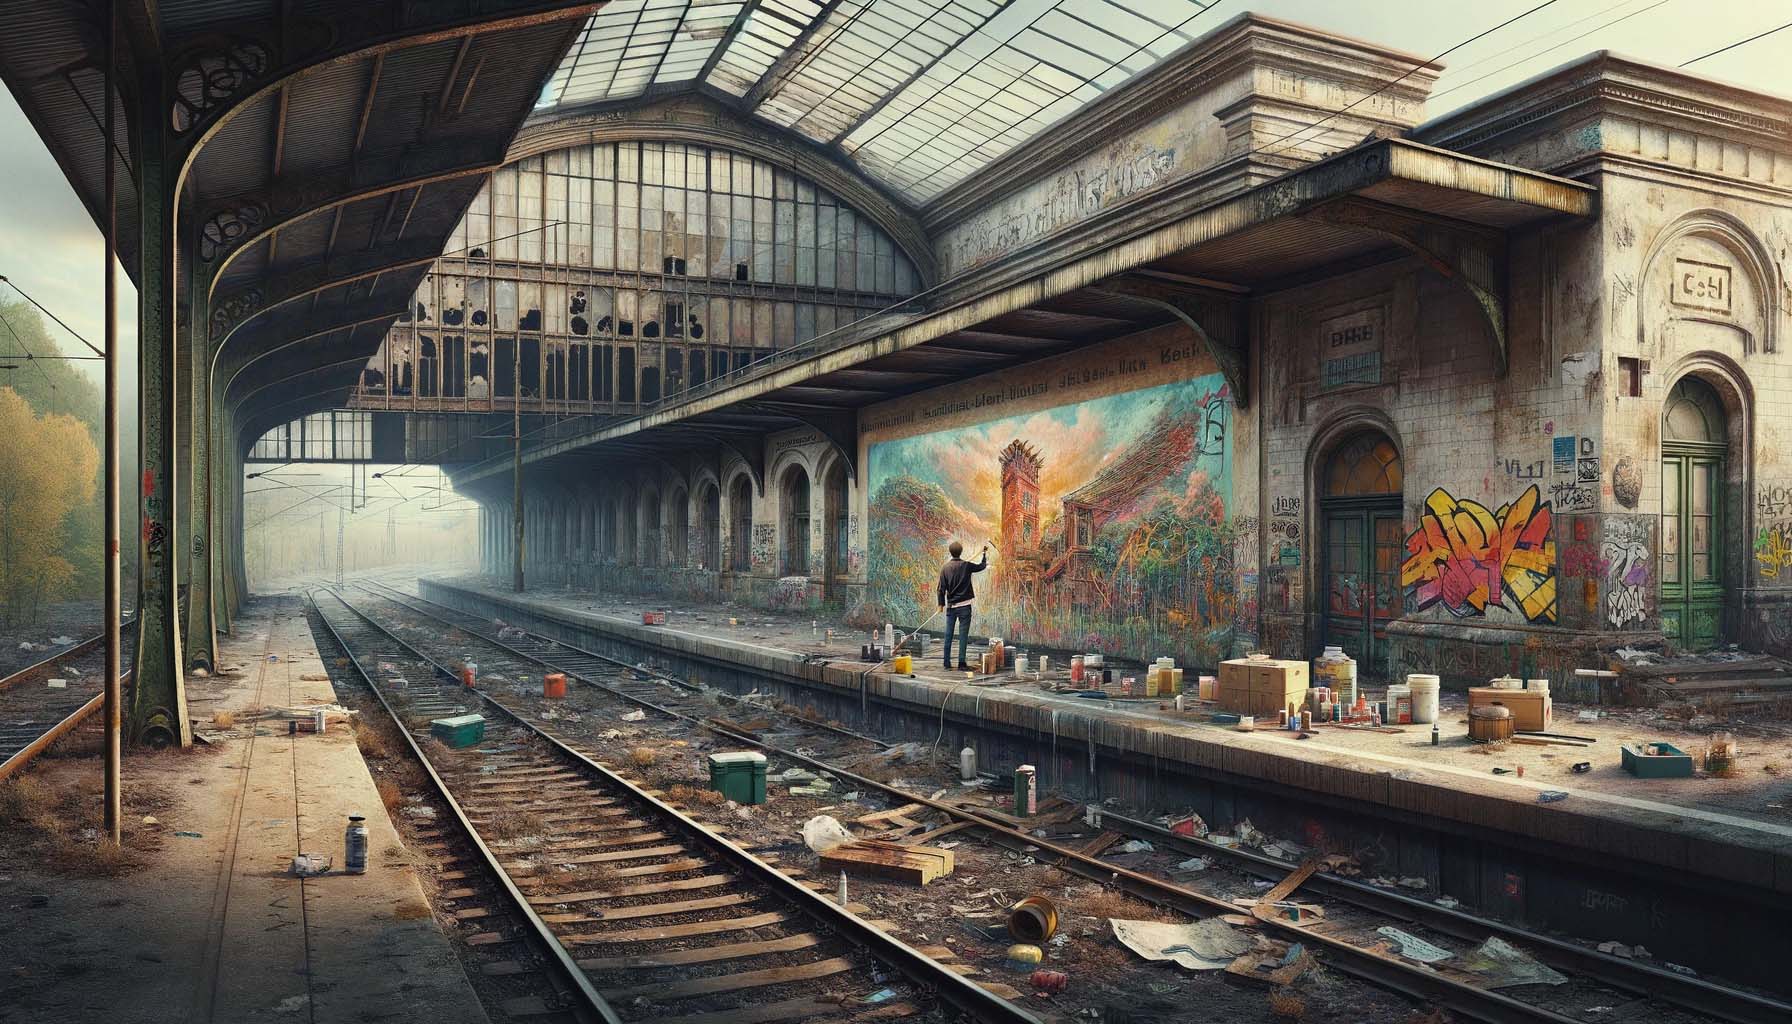 Heruntergekommener Bahnhof voller Müll und überzogen mit Grafittis, davon einige künstlerisch